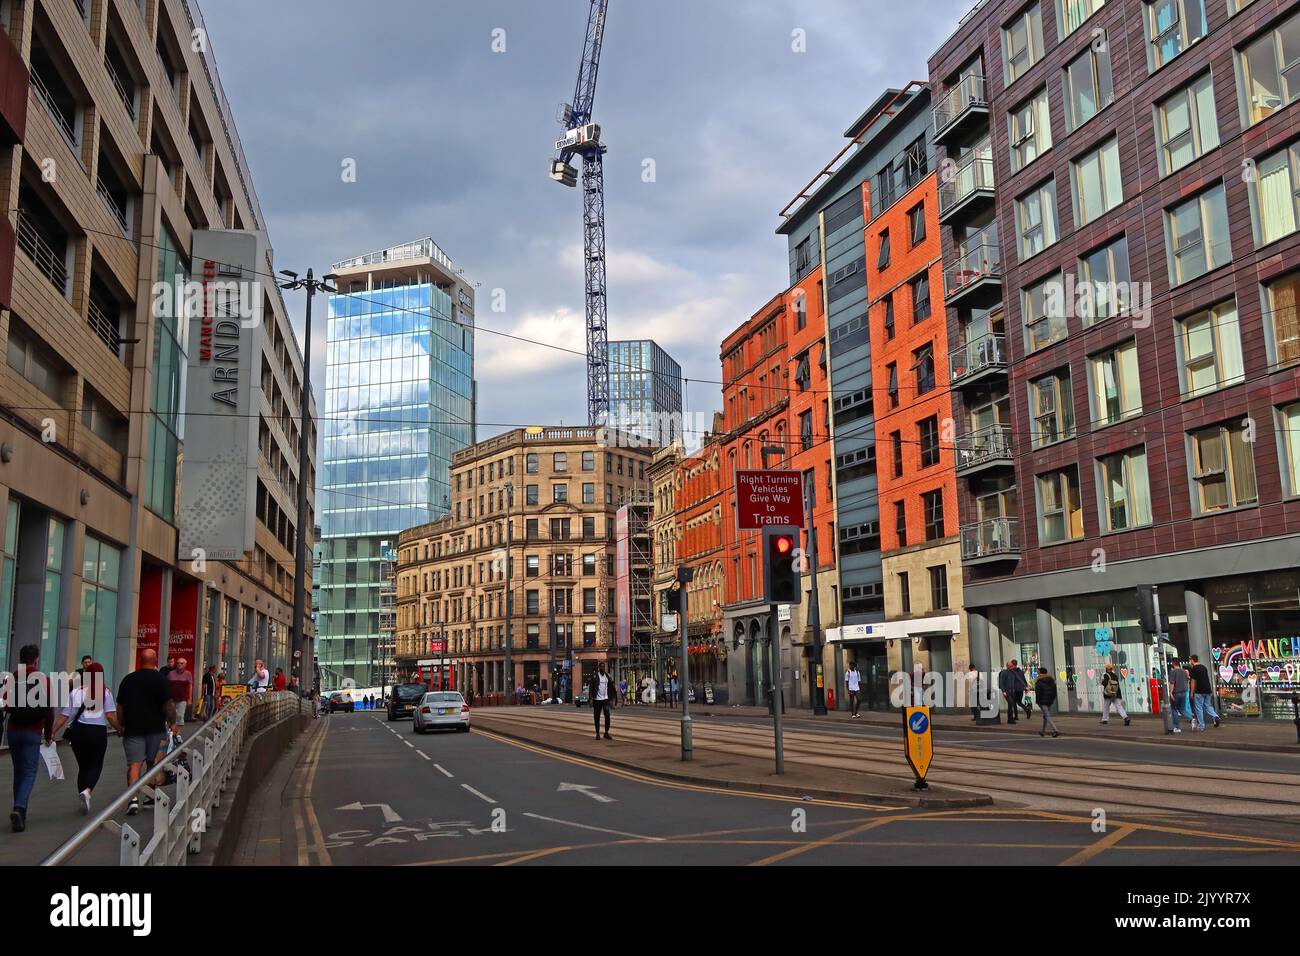 High Street & Manchester Arndale Centre / Market, Manchester, Angleterre, Royaume-Uni, M4 3AB, Avec grue de construction à Shude Hill Banque D'Images